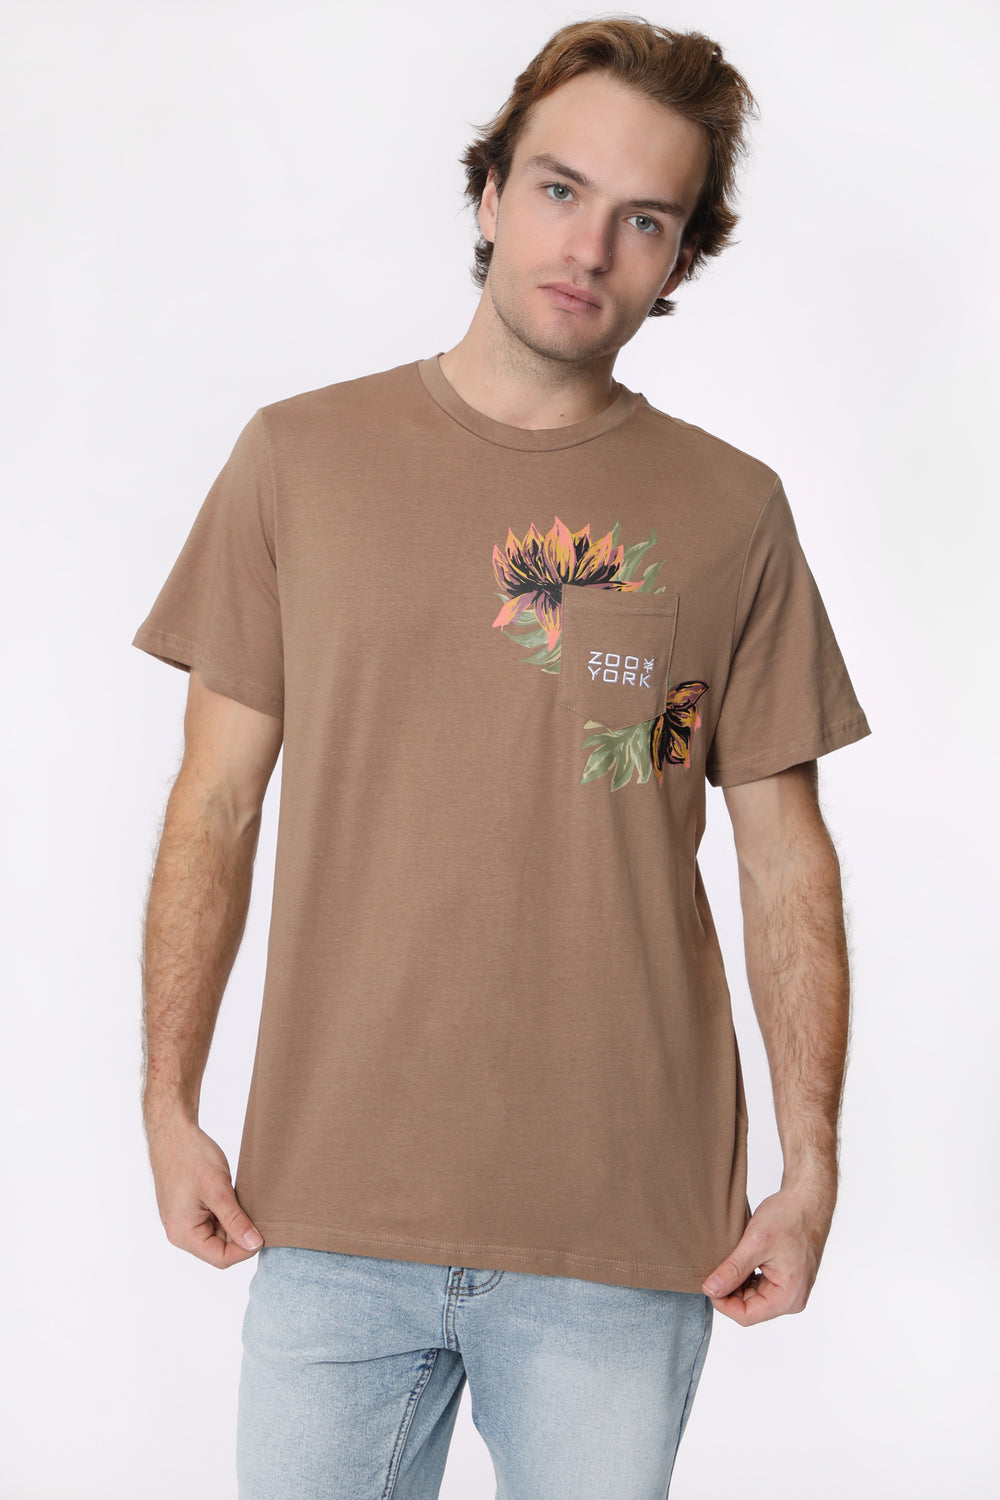 T-Shirt Avec Poche Imprimé Floral Zoo York Homme T-Shirt Avec Poche Imprimé Floral Zoo York Homme